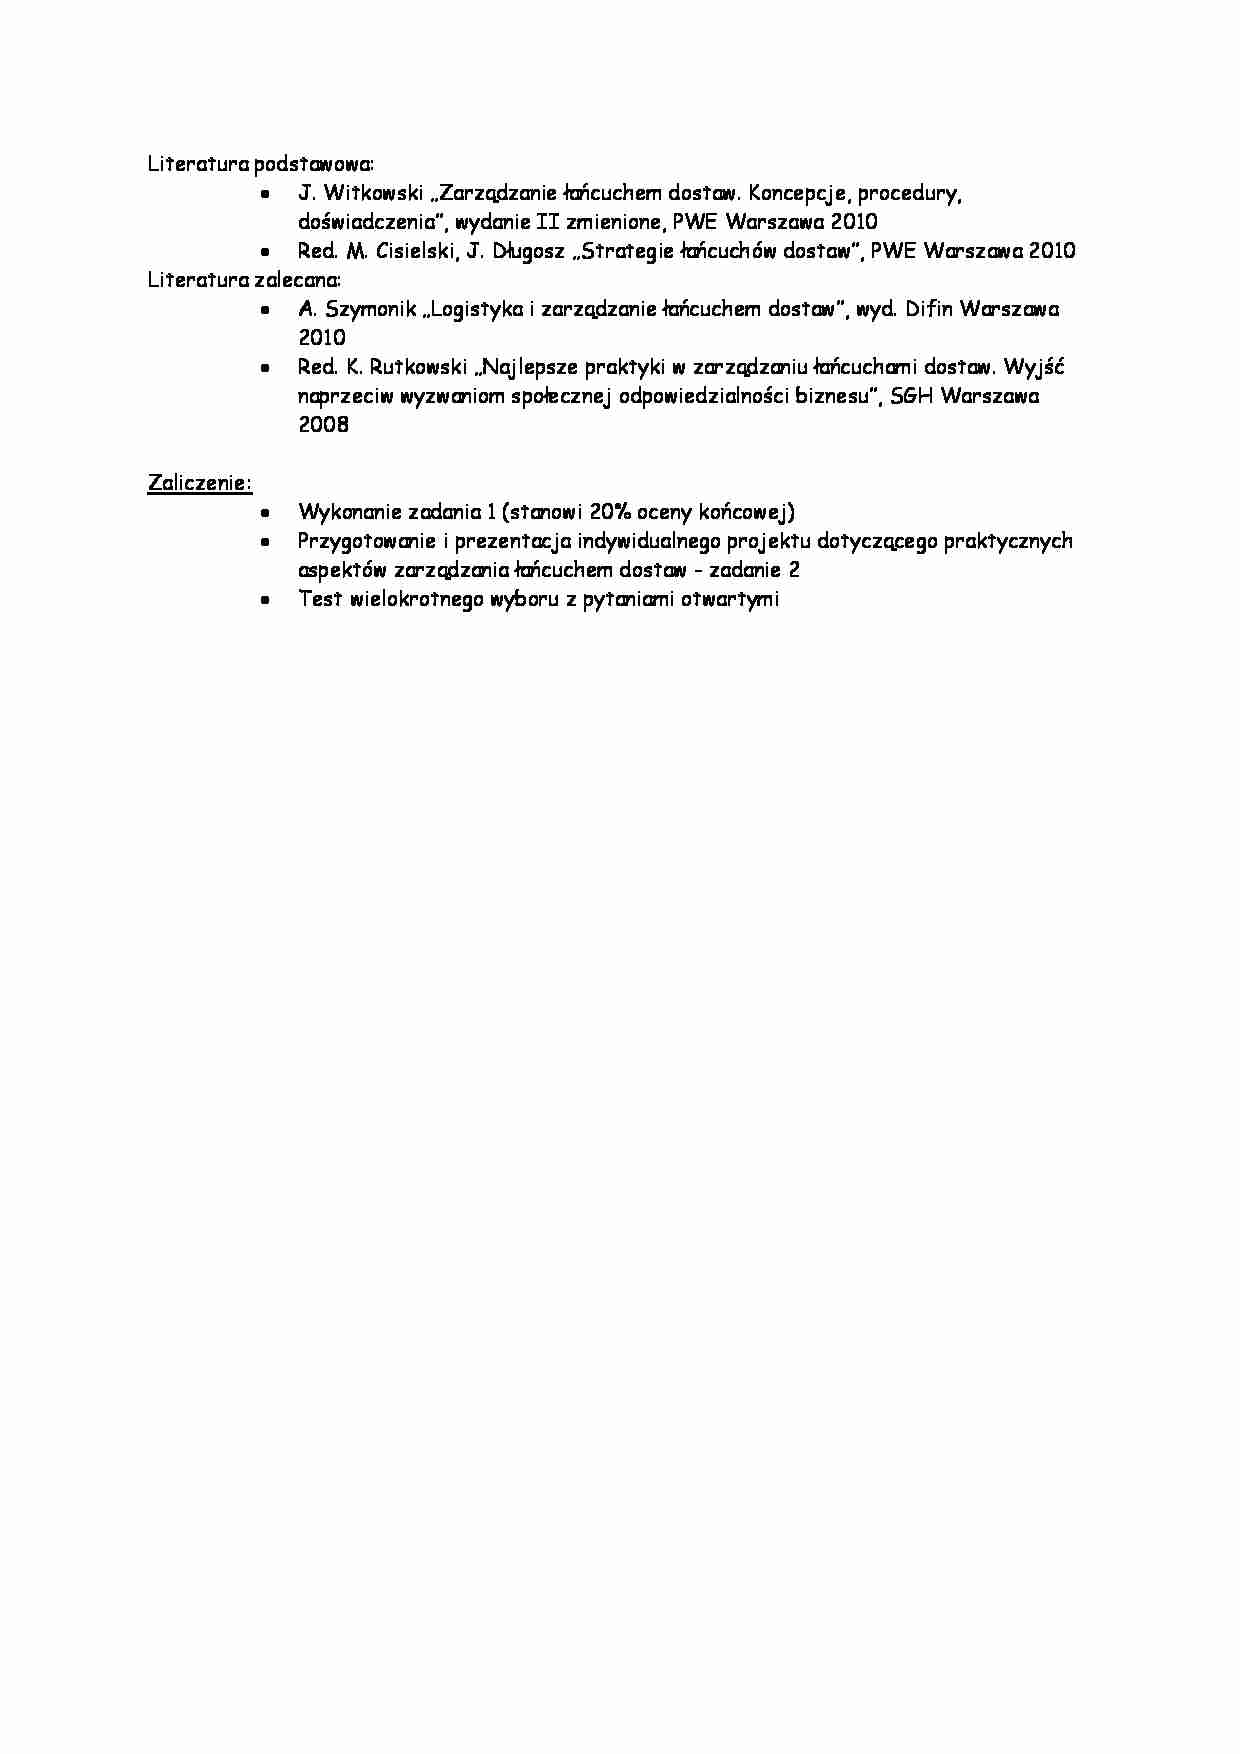 Logistyka i zarządzanie - sprawy organizacyjne - strona 1